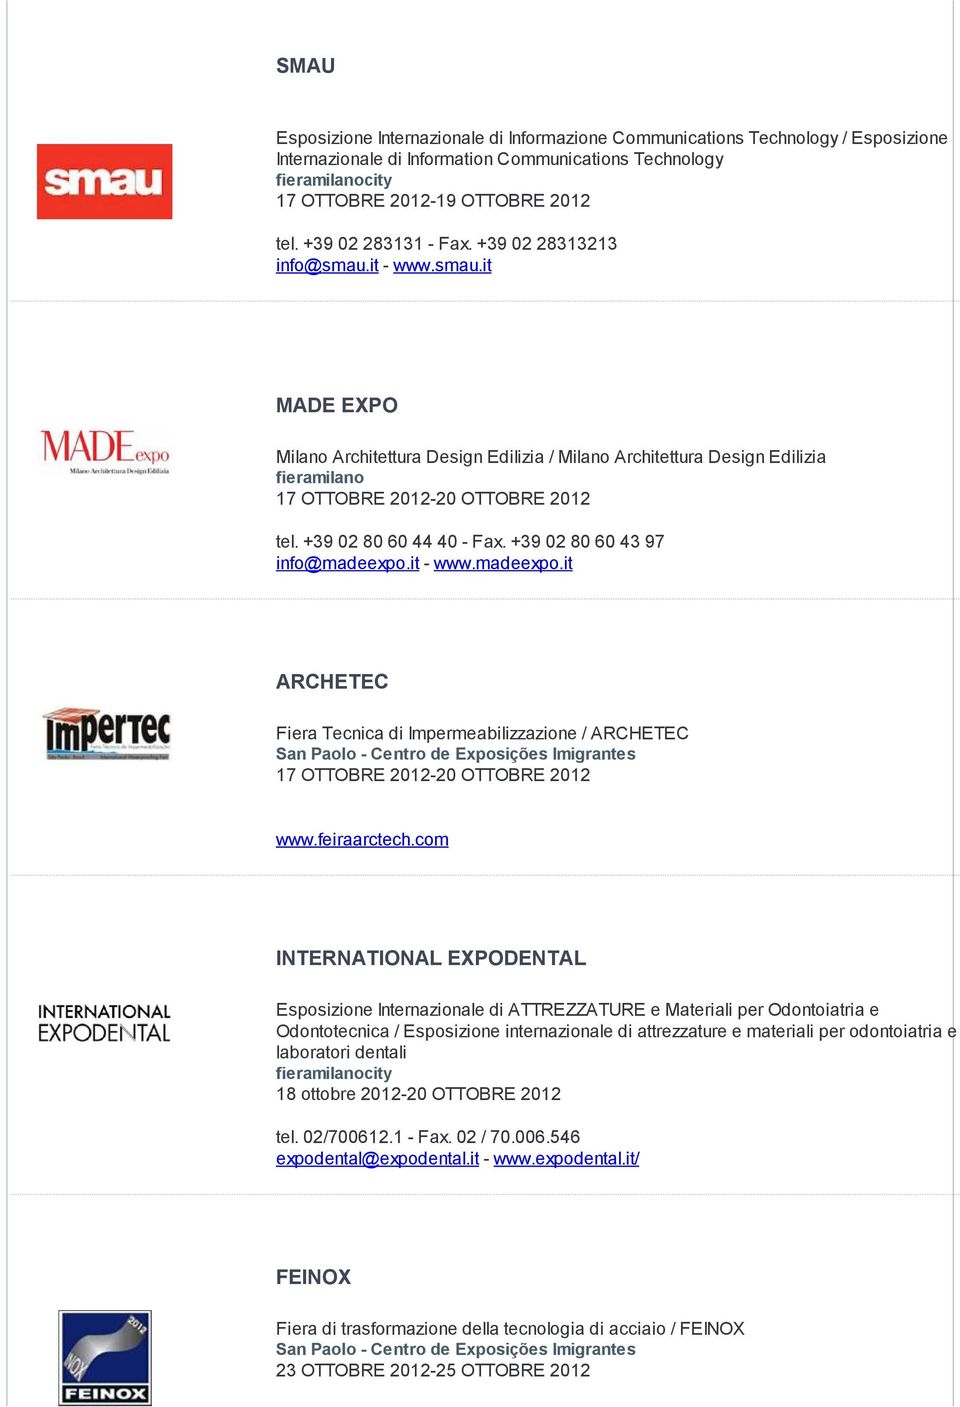 +39 02 80 60 44 40 - Fax. +39 02 80 60 43 97 info@madeexpo.it - www.madeexpo.it ARCHETEC Fiera Tecnica di Impermeabilizzazione / ARCHETEC 17 OTTOBRE 2012-20 OTTOBRE 2012 www.feiraarctech.